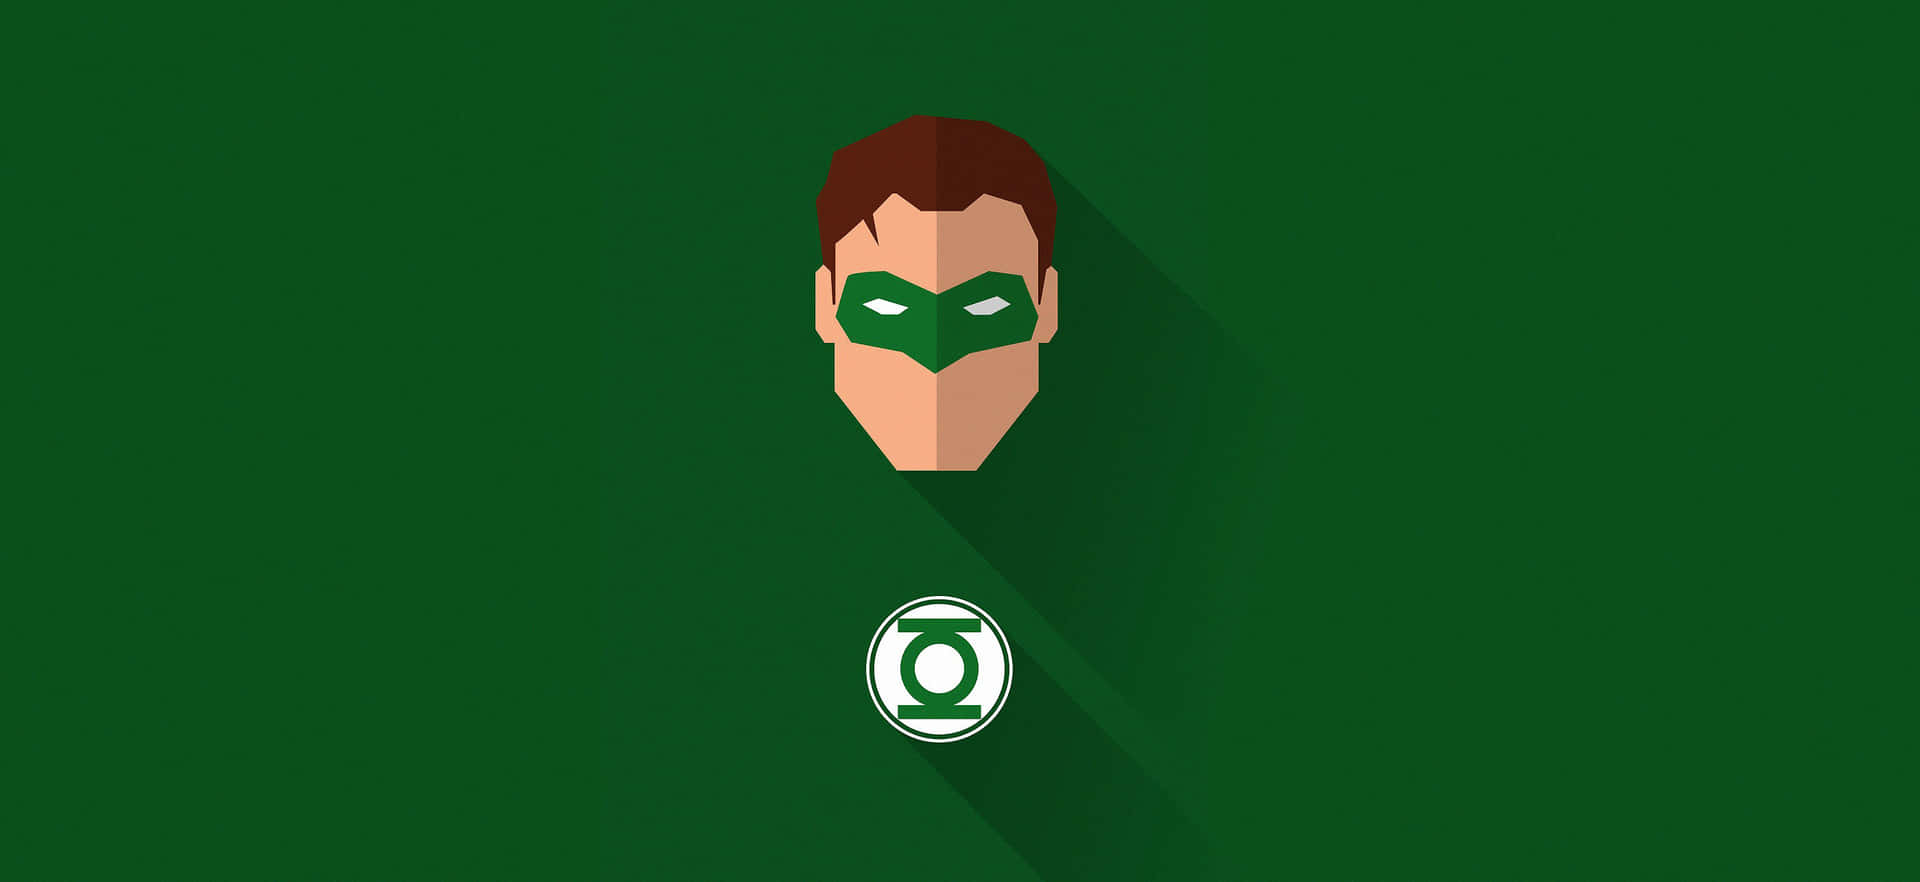 Trittdem Green Lantern Corps Bei Und Schütze Die Galaxie!